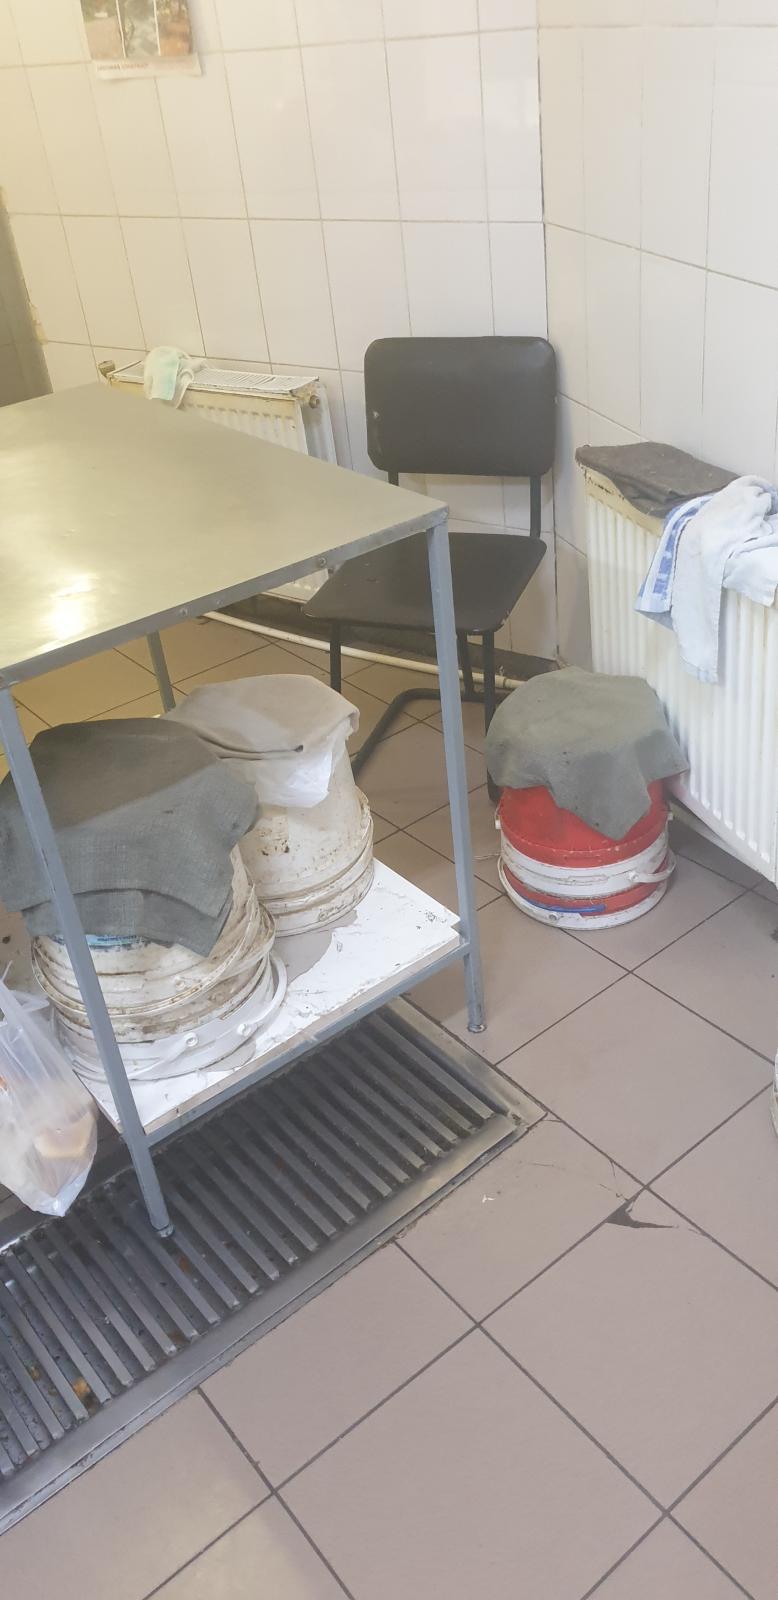 Антисанитария и нарушение условий хранения. ANSA провел внезапные проверки в магазинах Кишинева